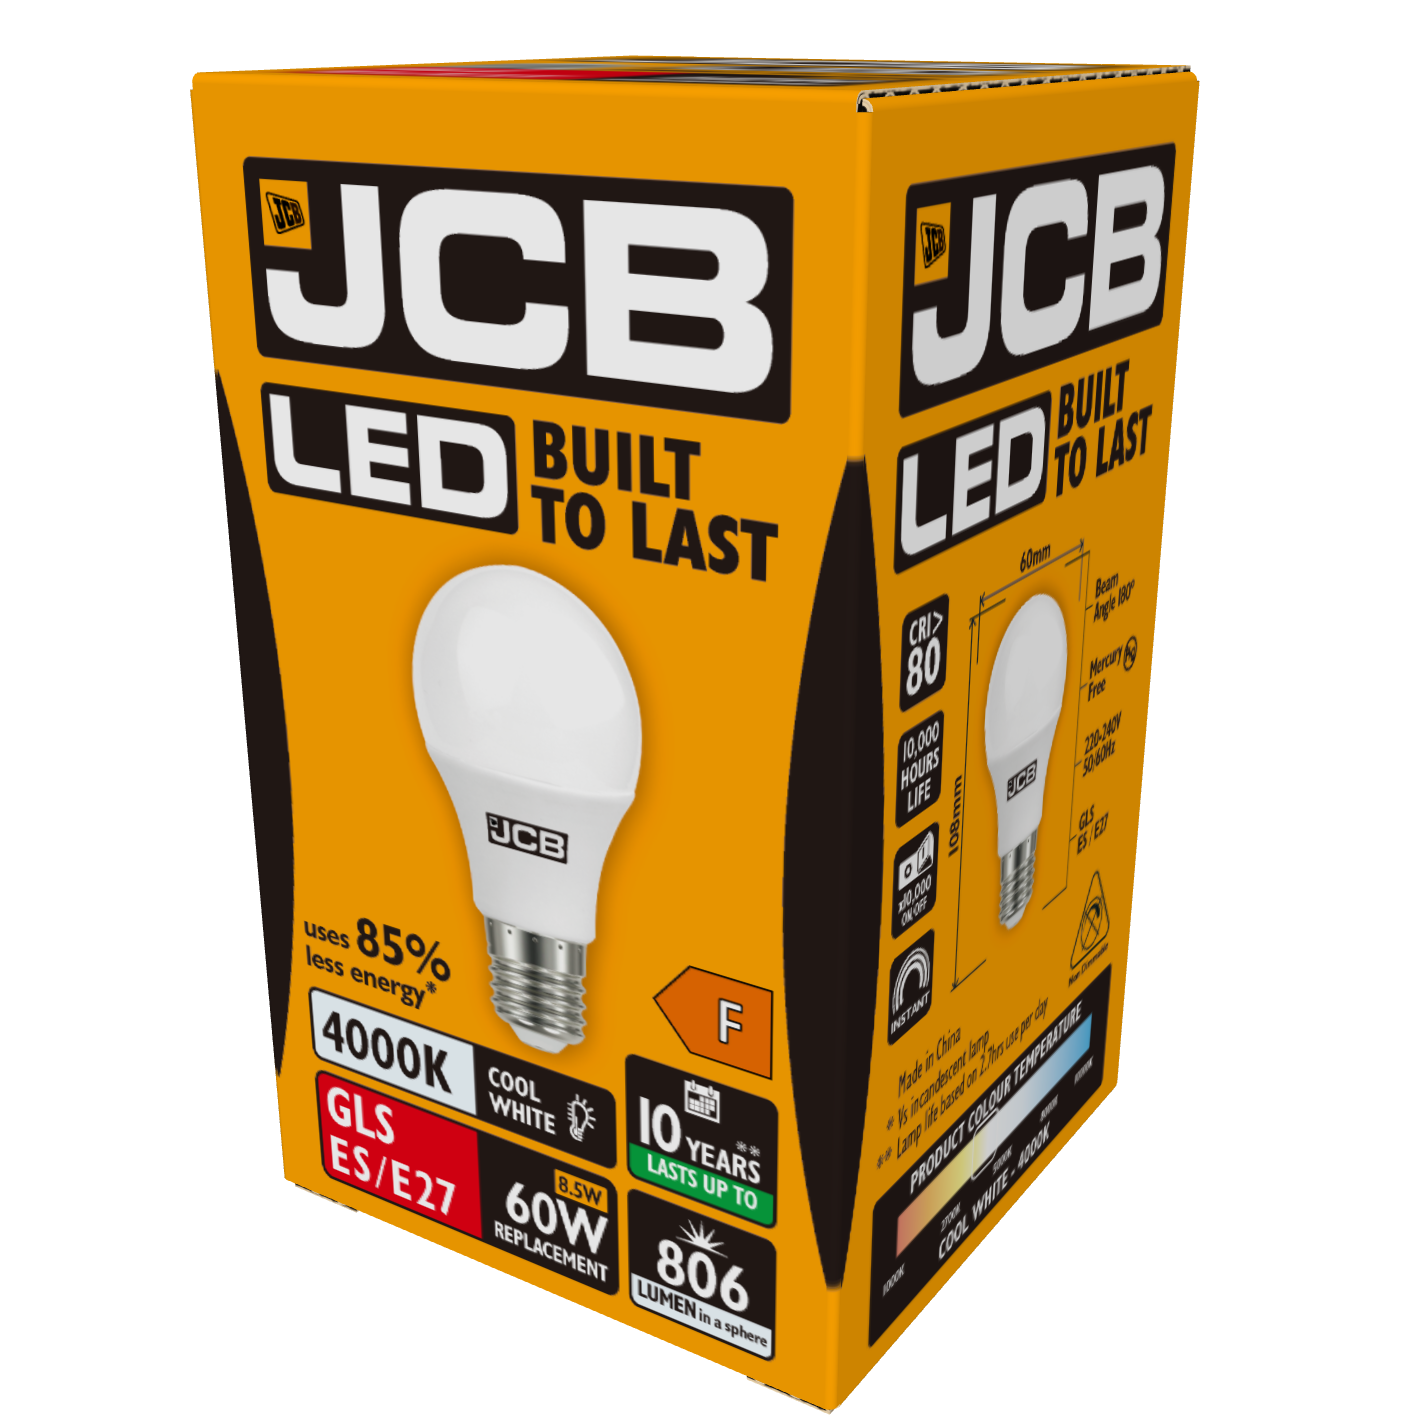 JCB LED GLS E27 (ES) 806 lm 8,5 W 4.000 K (kaltweiß), Packung mit 1 Stück